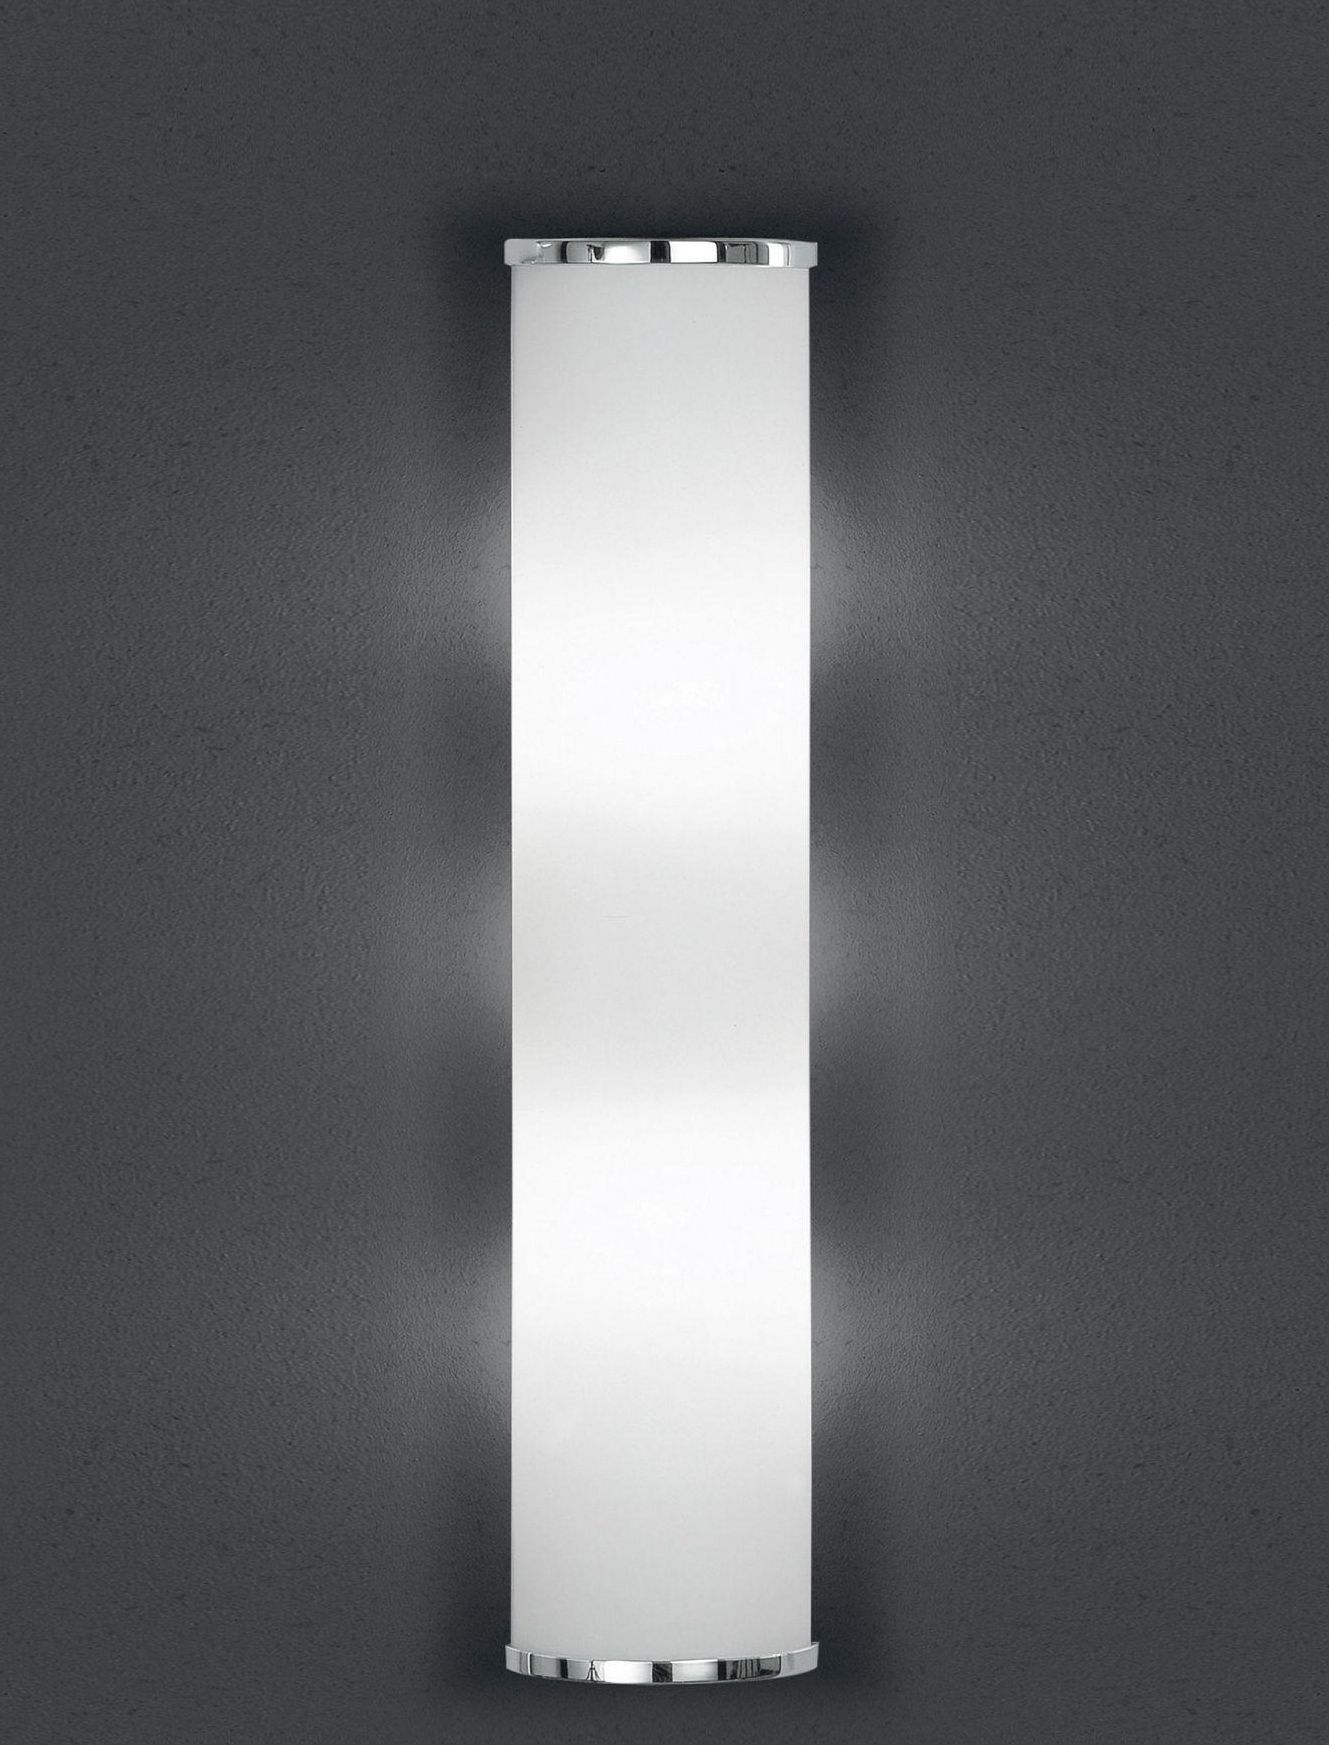 BANKAMP Leuchtenmanufaktur Moderne Wandleuchten & Wandlampen von BANKAMP Leuchtenmanufaktur LED-Wandleuchte Cromo 4295/530-02